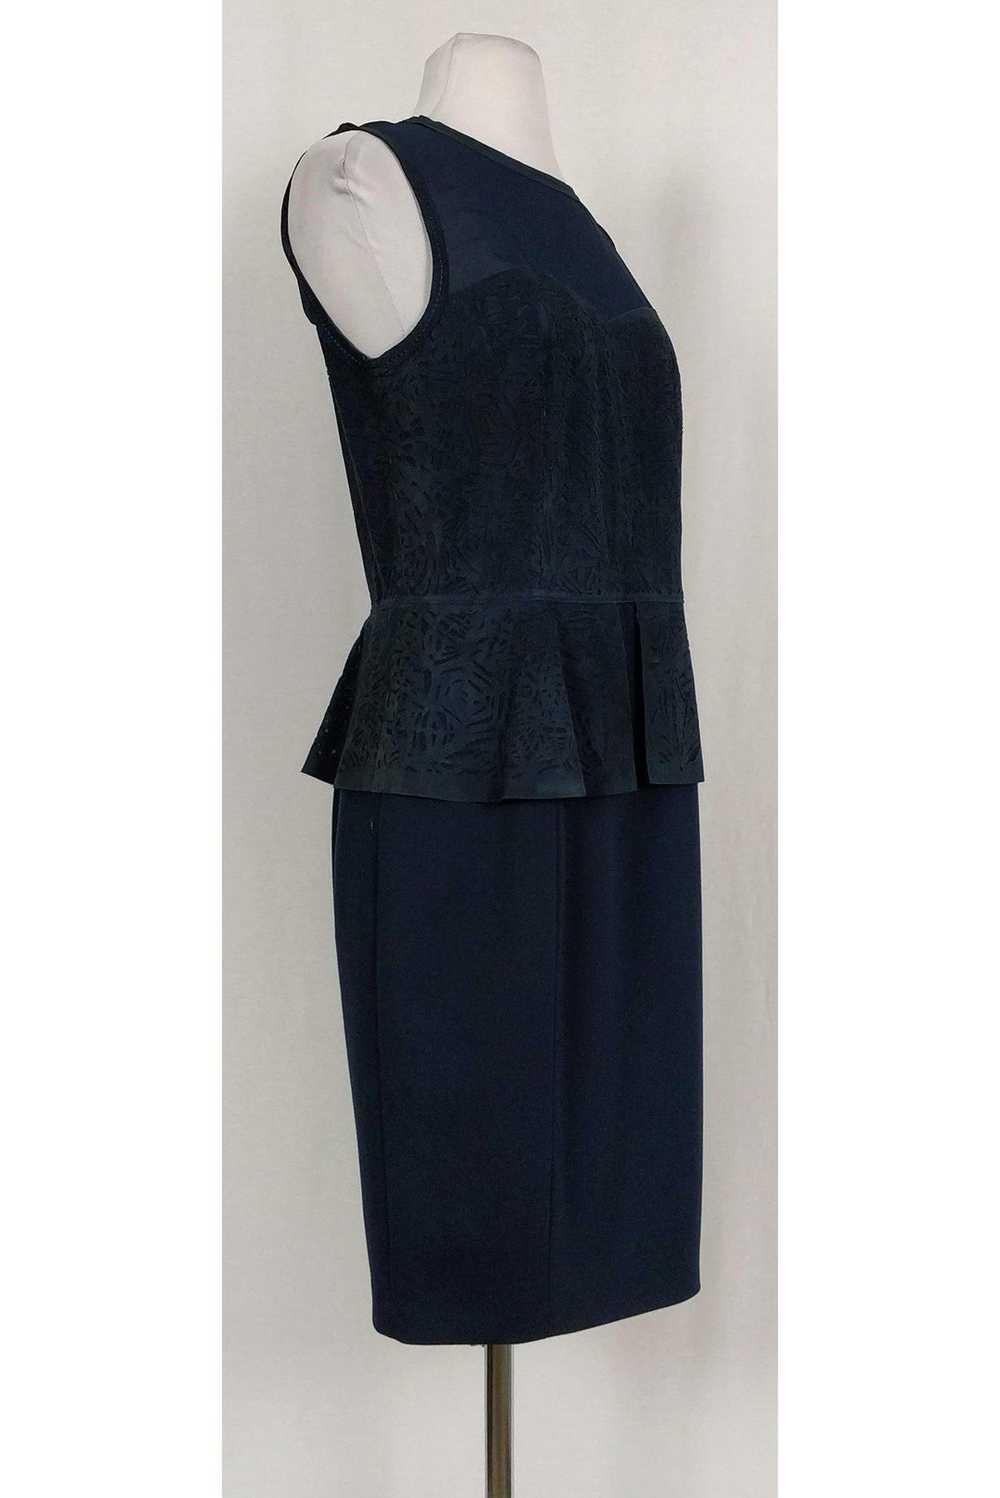 Elie Tahari - Blue Aviva Cutwork Peplum Dress Sz … - image 2